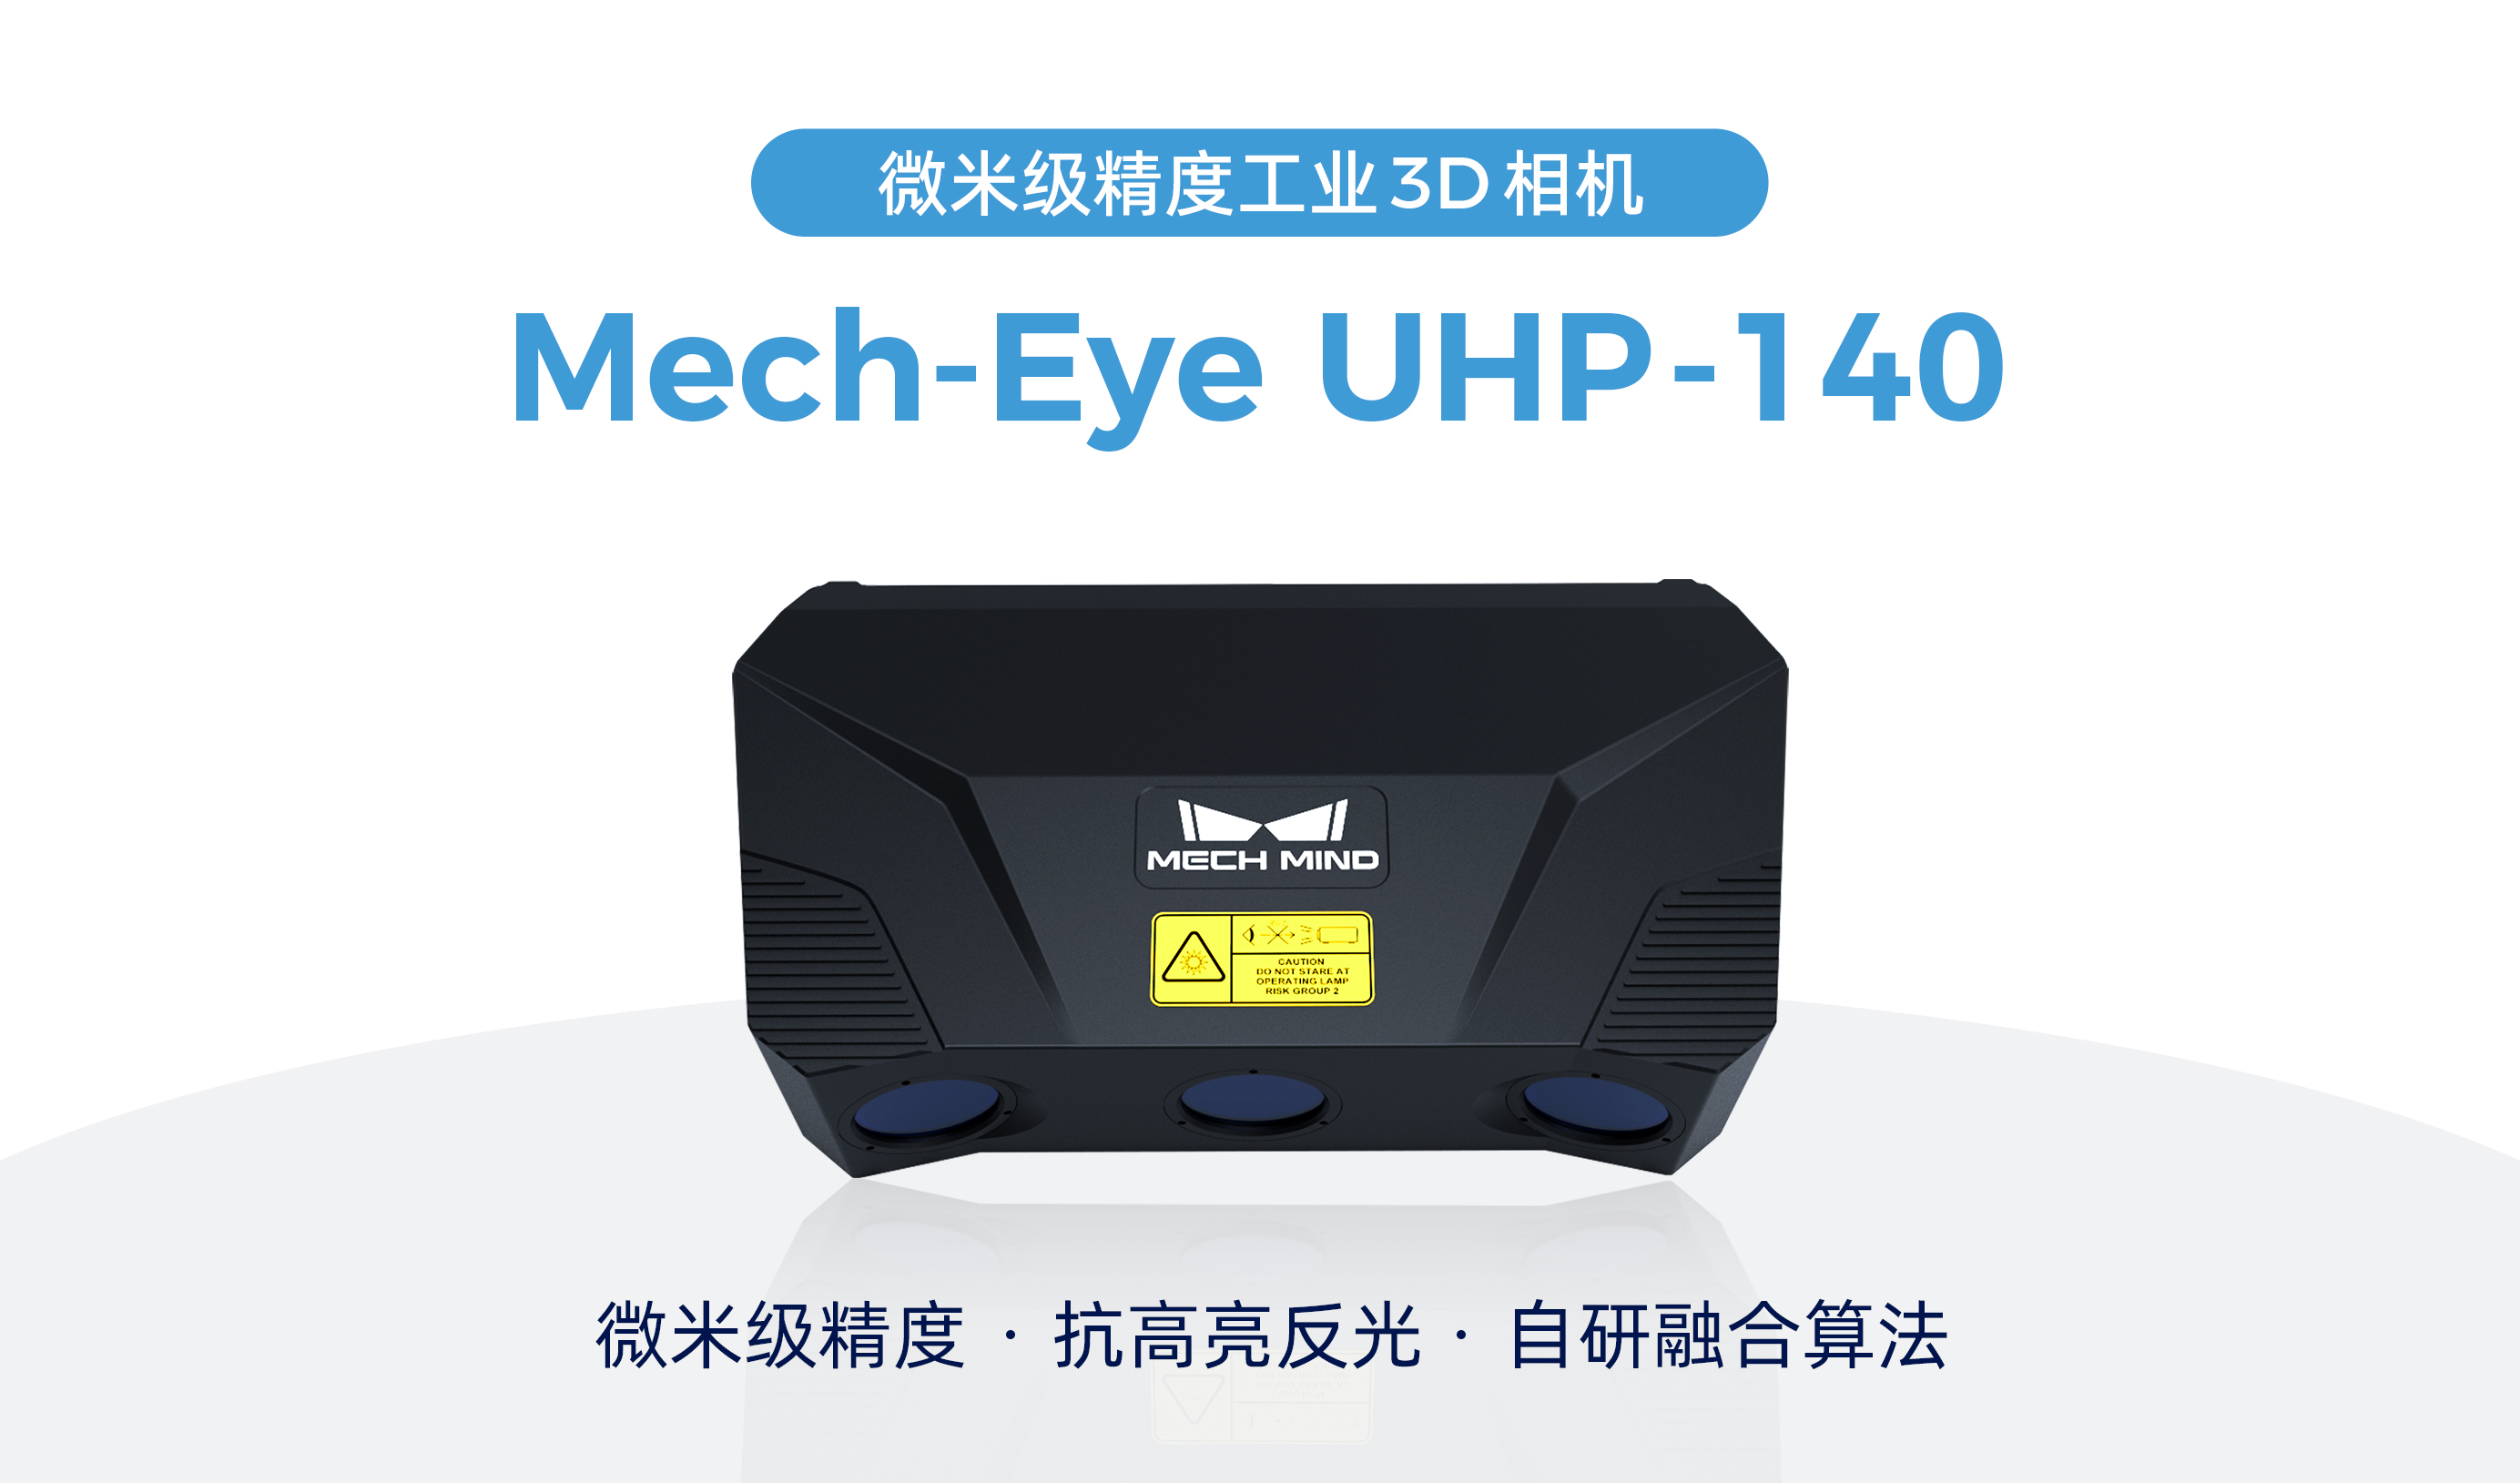 梅卡曼德微米级精度3D相机UHP-140发布，解决汽车等行业检测/量测痛点需求